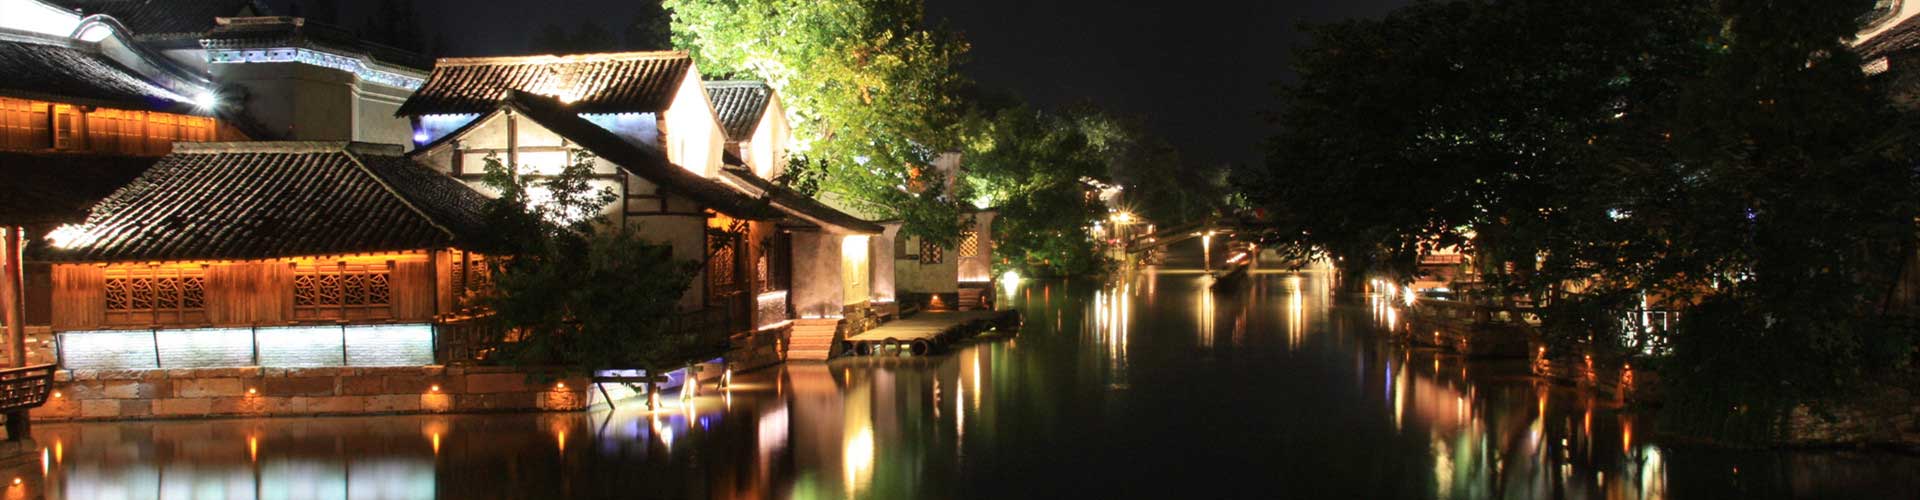 Wuzhen Water Town, Hangzhou Tours